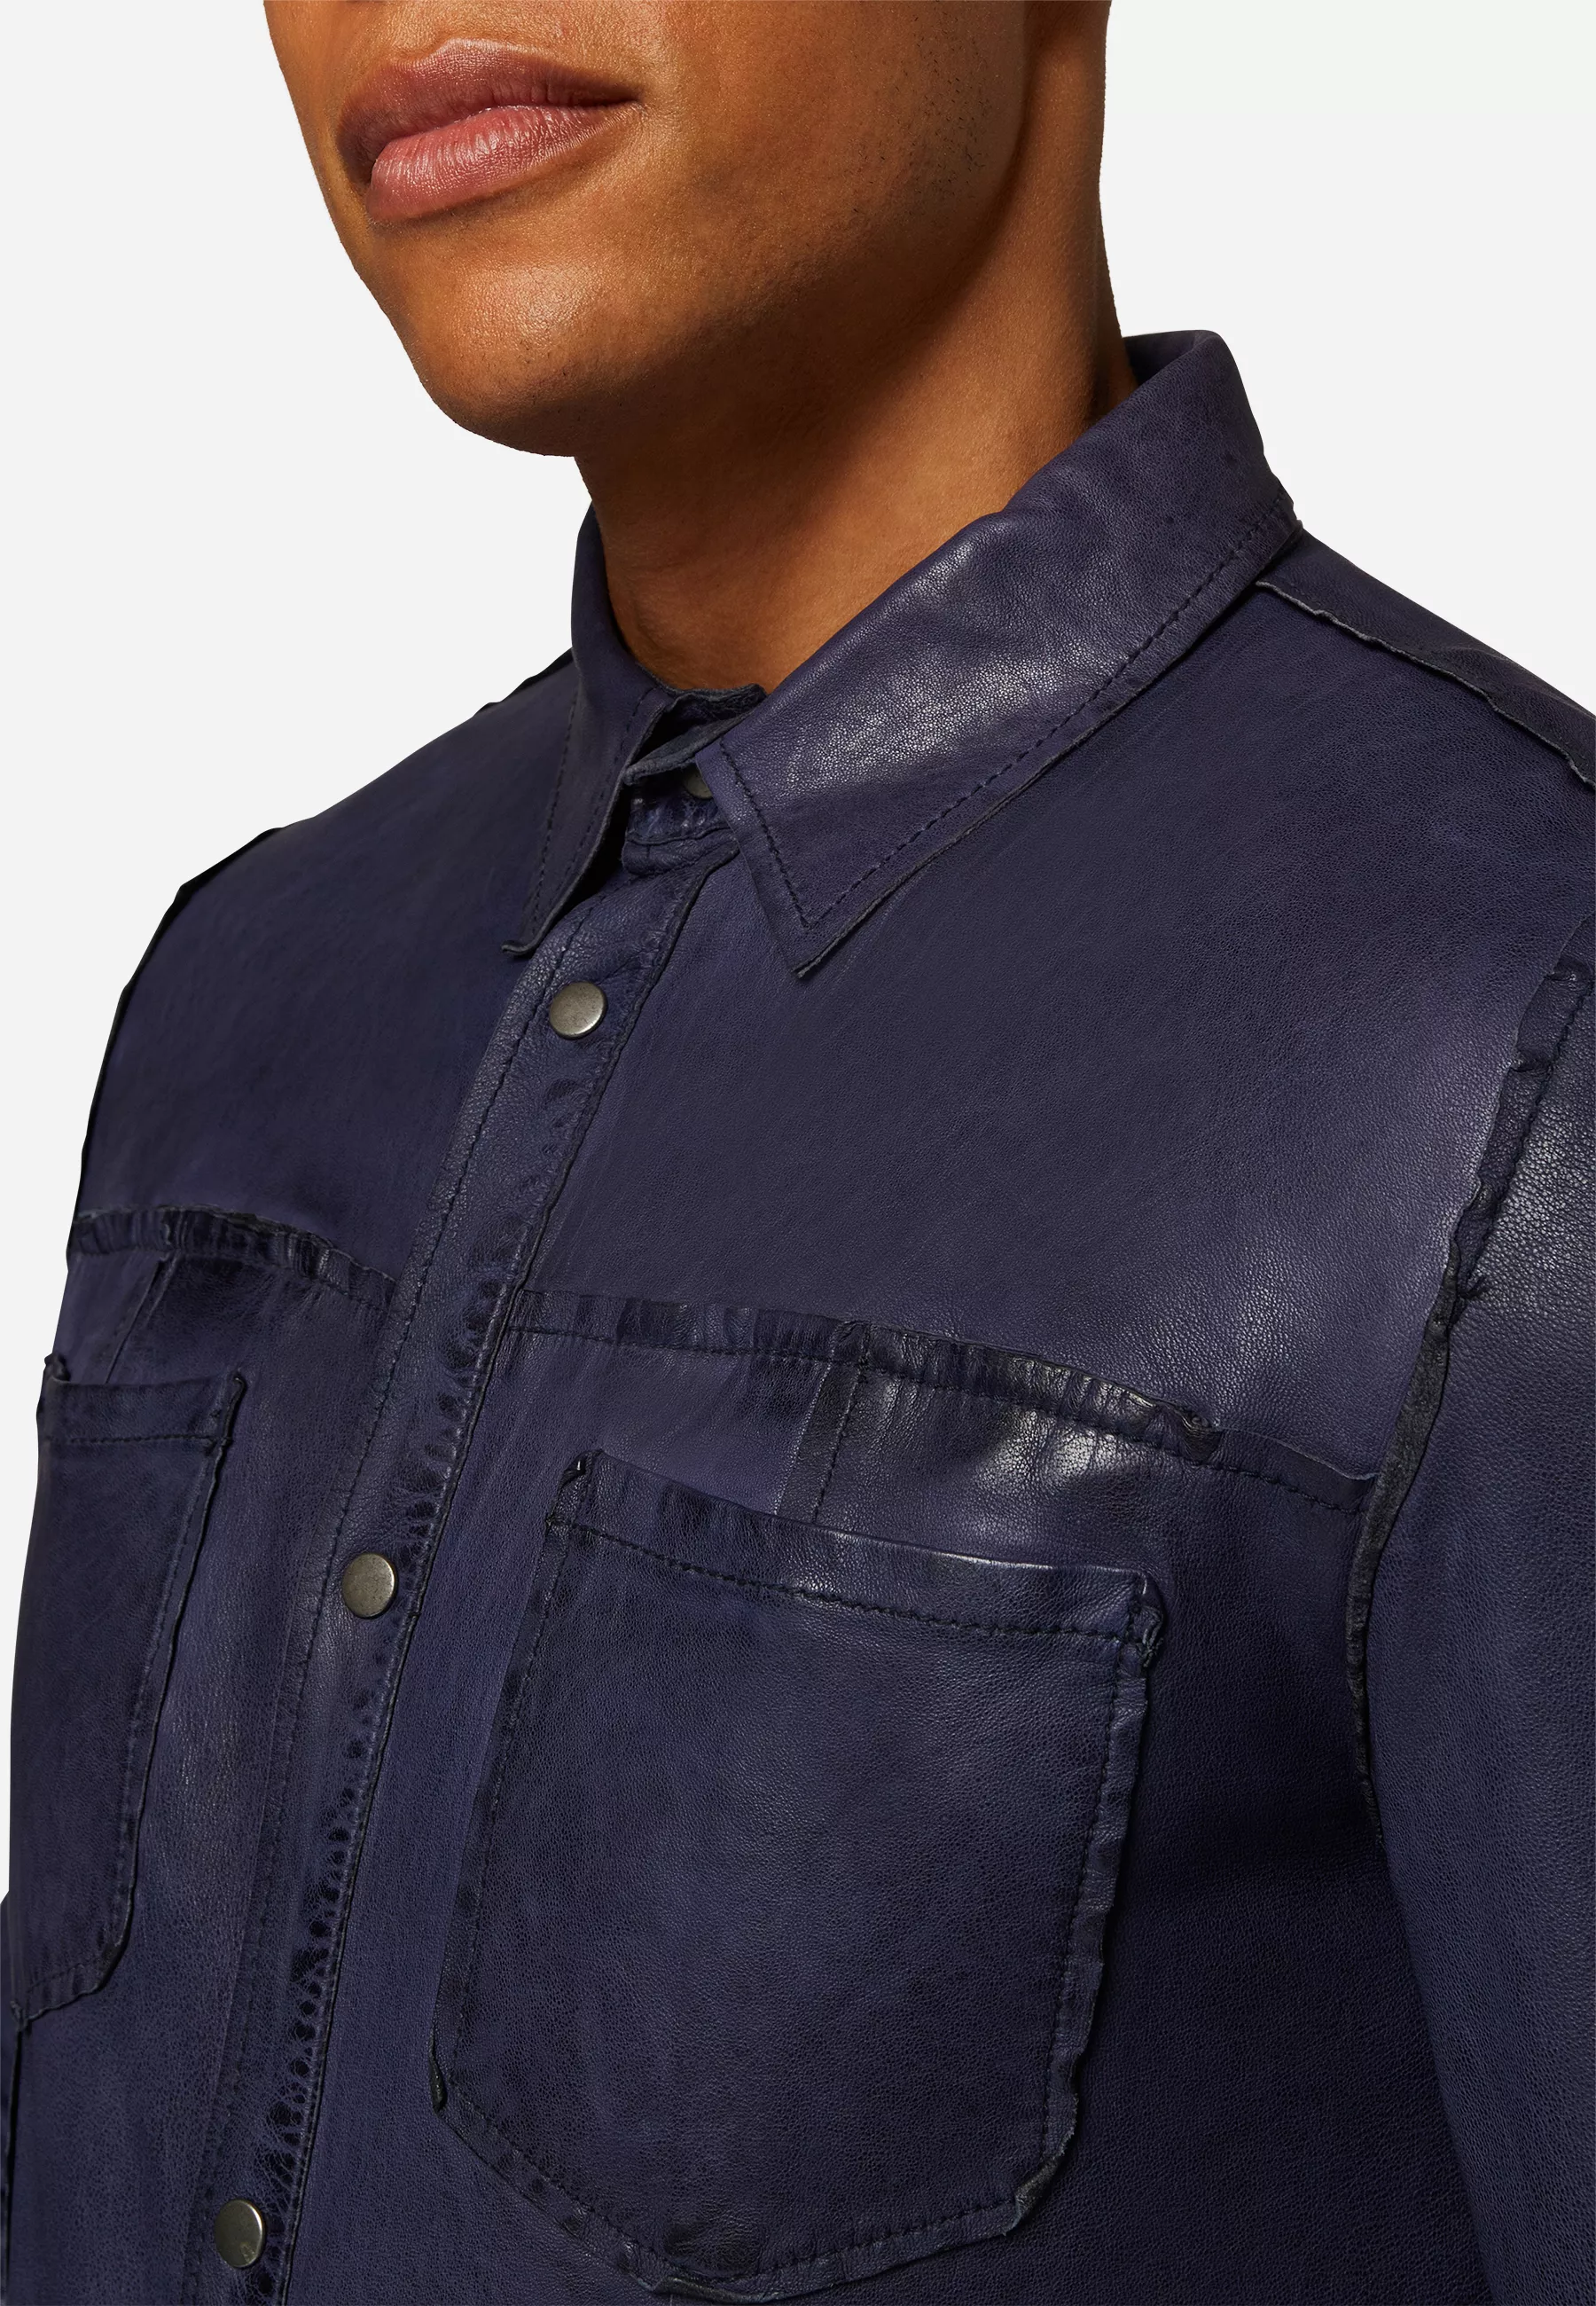 Herren Lederjacke Reverse Shirt Glattleder in Blau von Ricano, Detailansicht am Model vom Kragen und den Brusttaschen